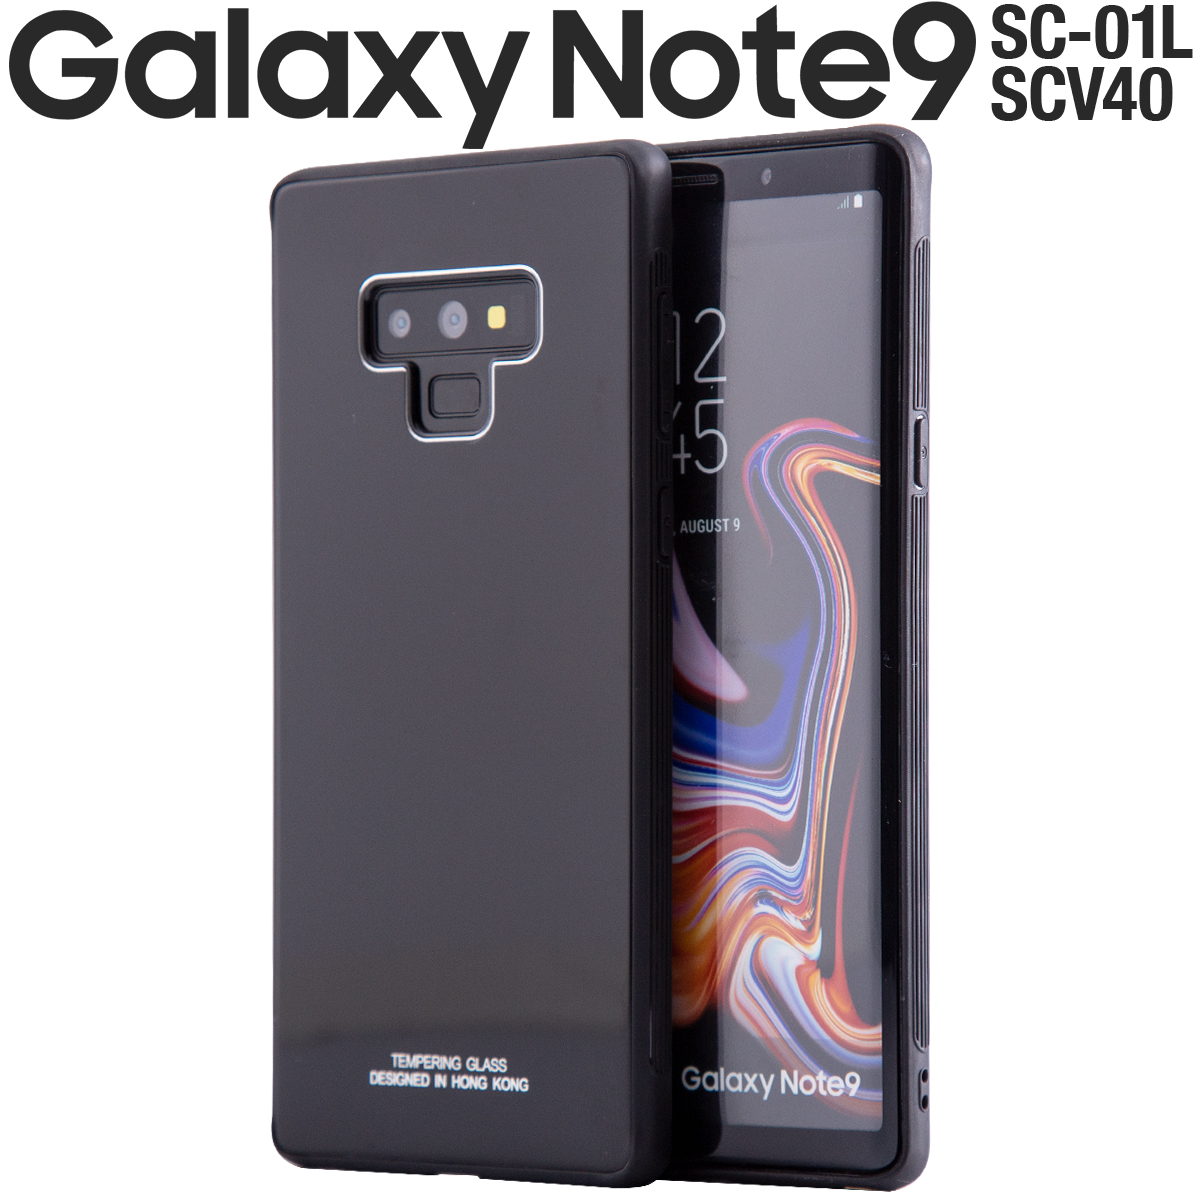 Galaxy Note9 SC-01L SCV40 背面9Hガラスケース|スマホケース卸問屋